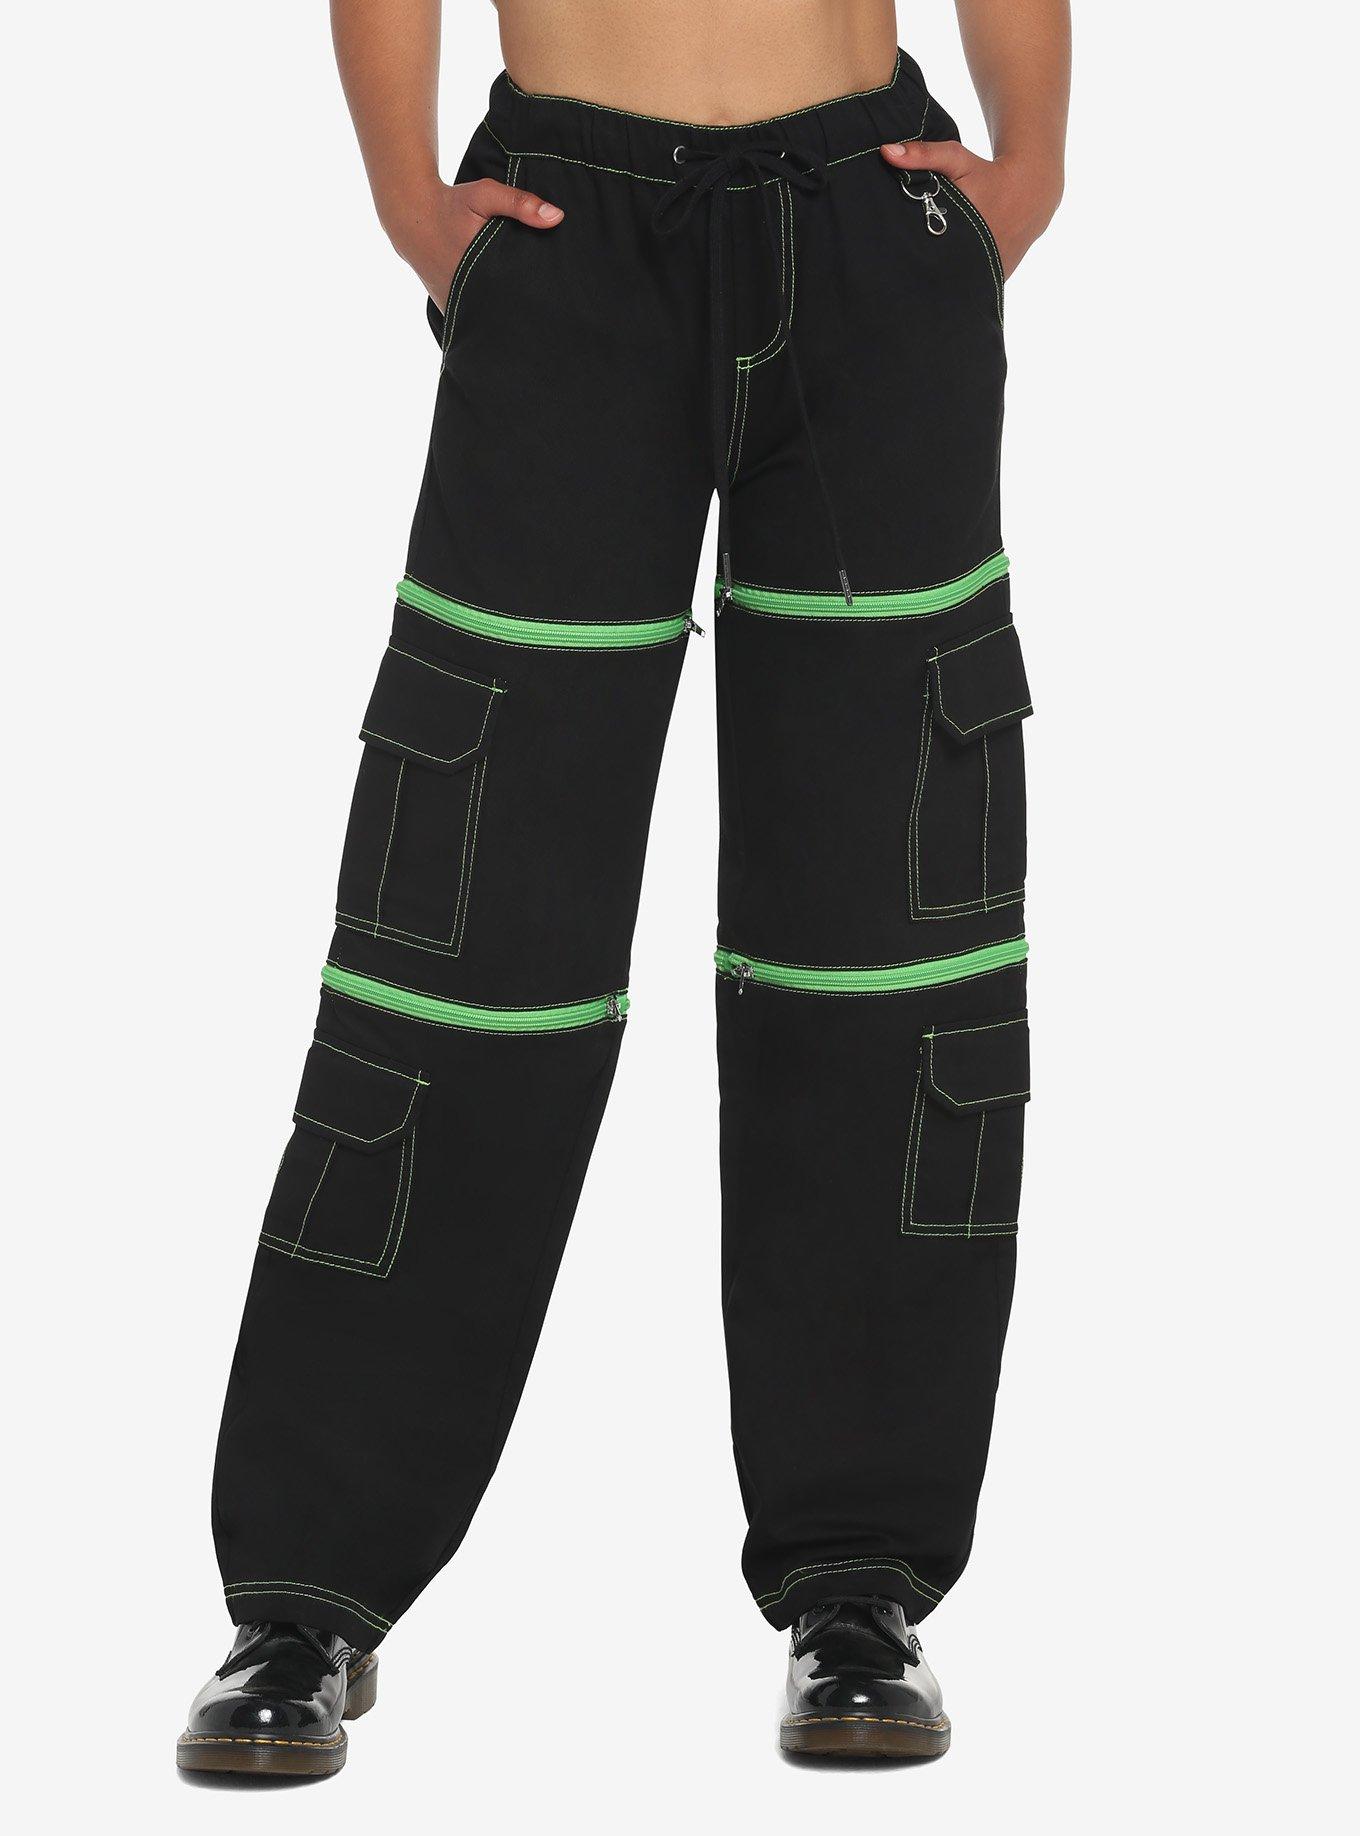 Black & Green Zip-Off Carpenter Pants, BLACK, hi-res